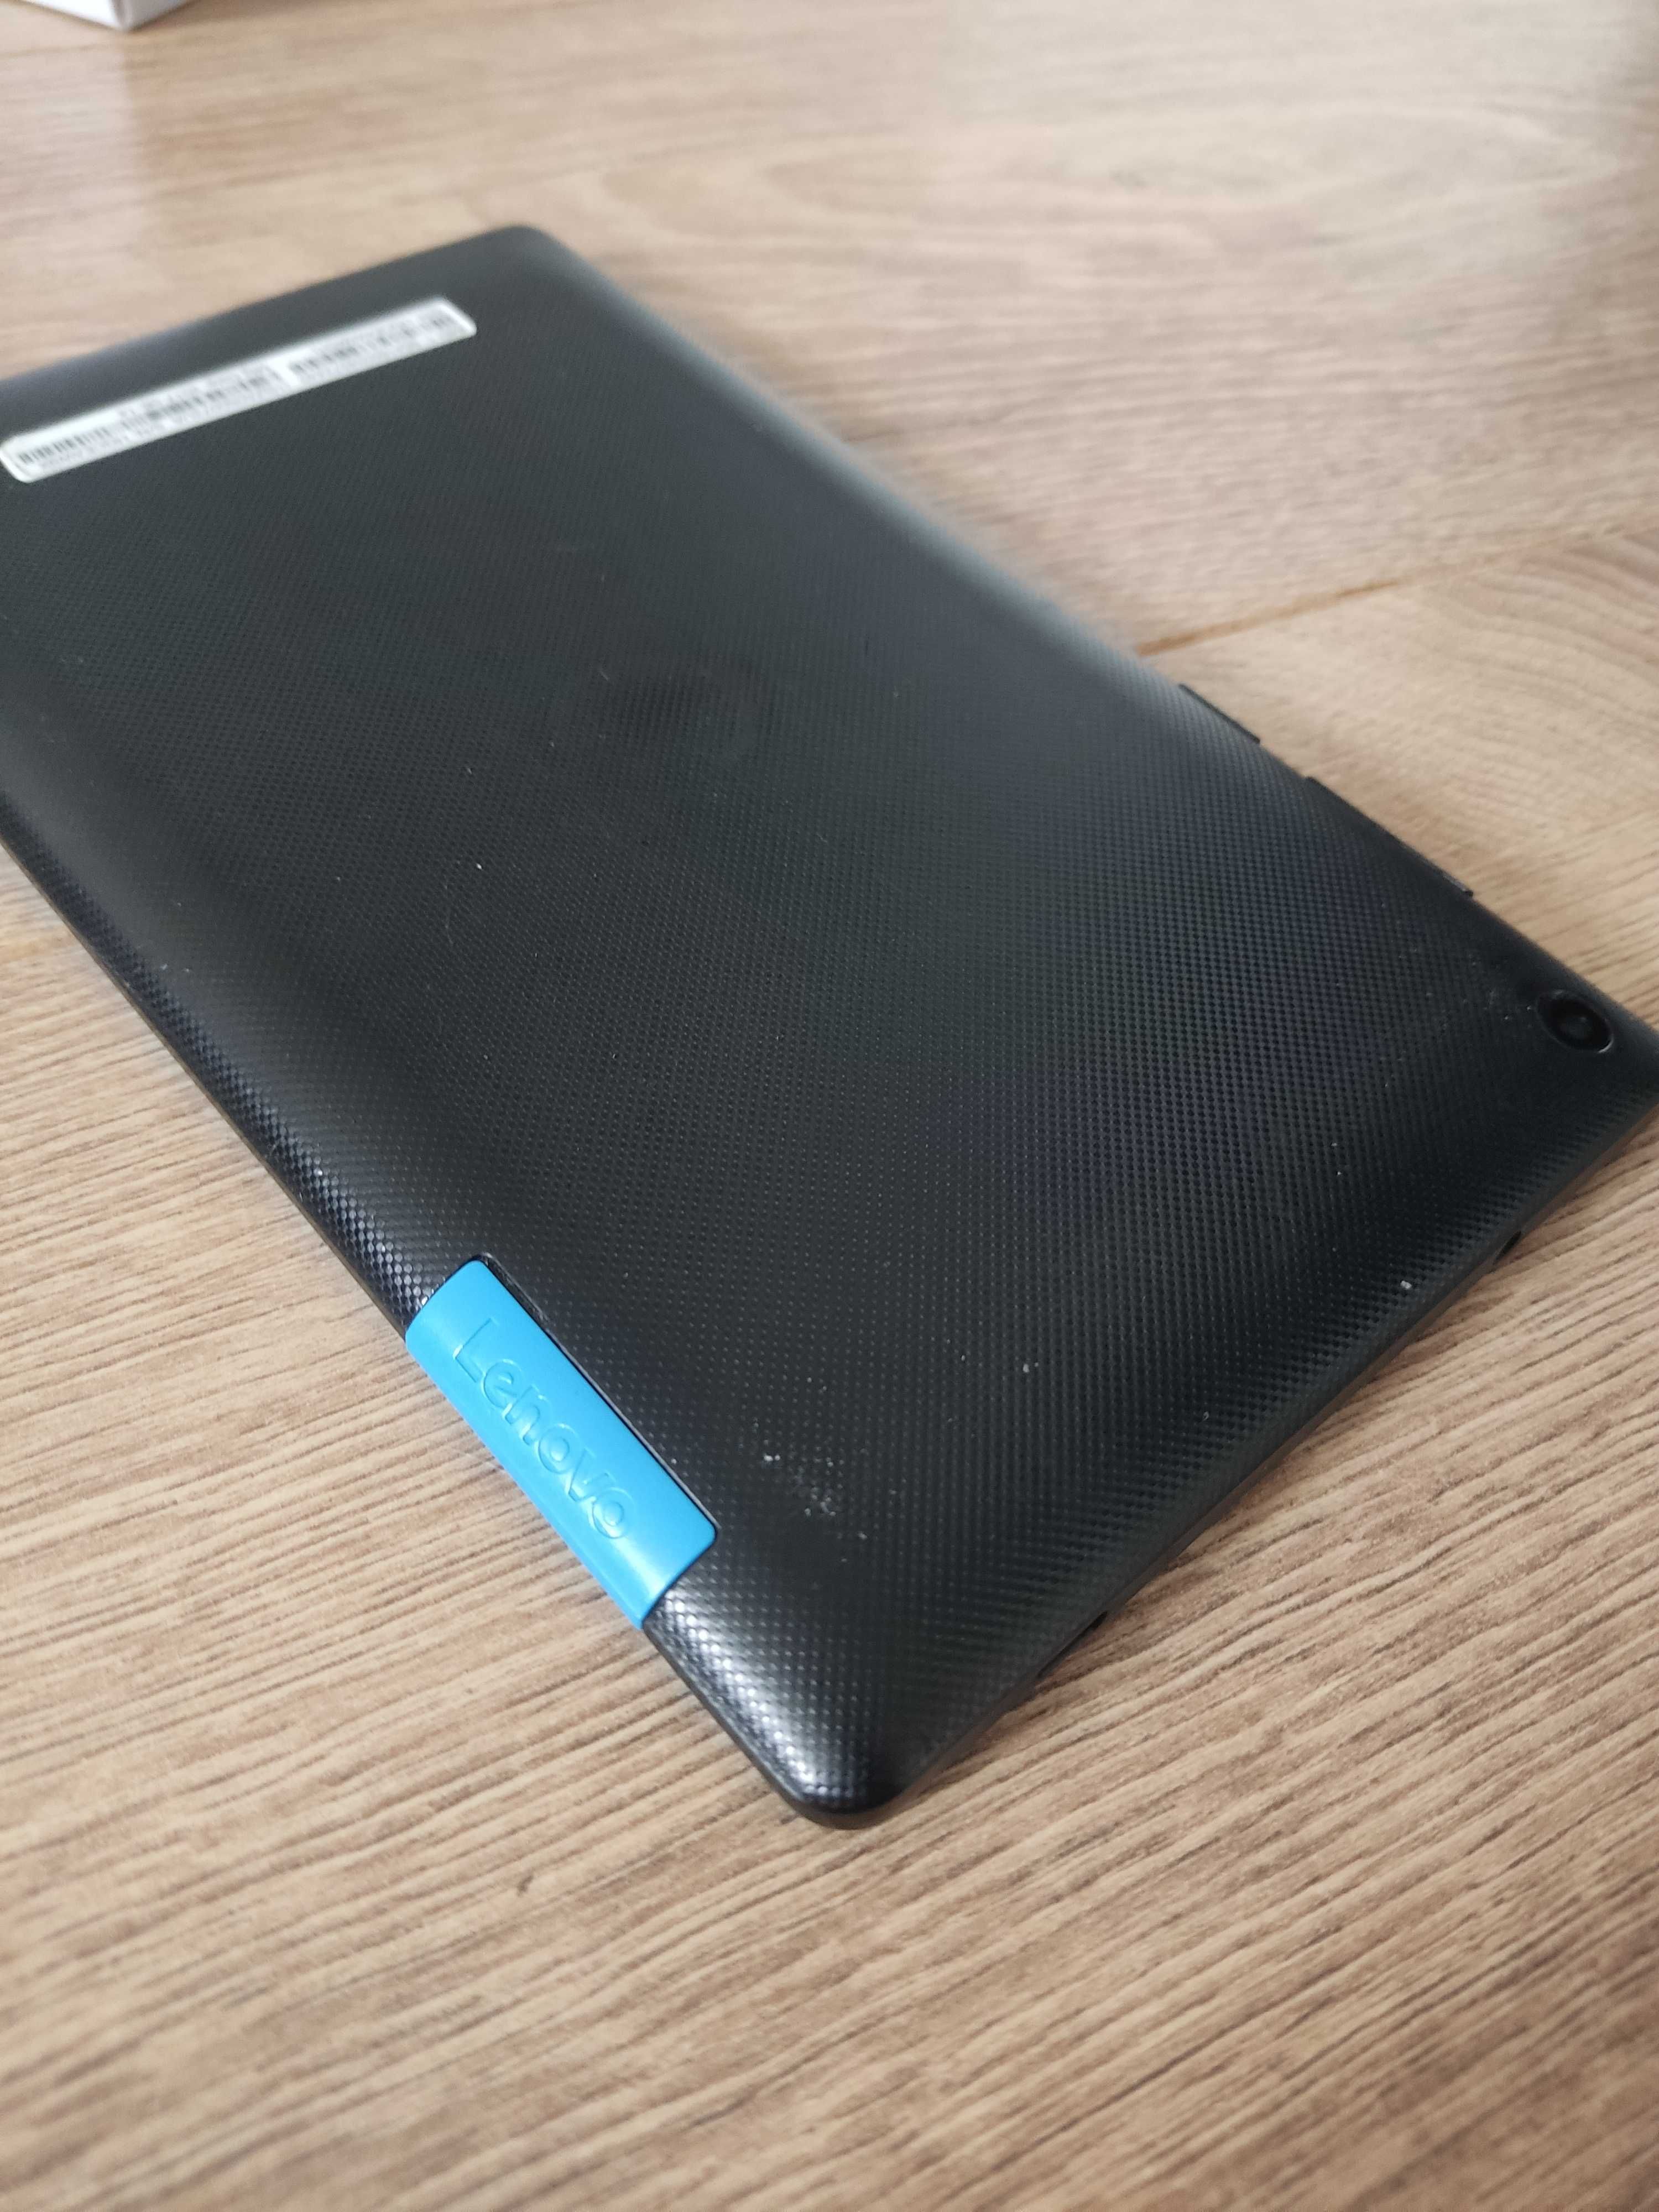 Планшет Lenovo Tab3 7 Essential TB3-710i має тріщину, сенсор робочий